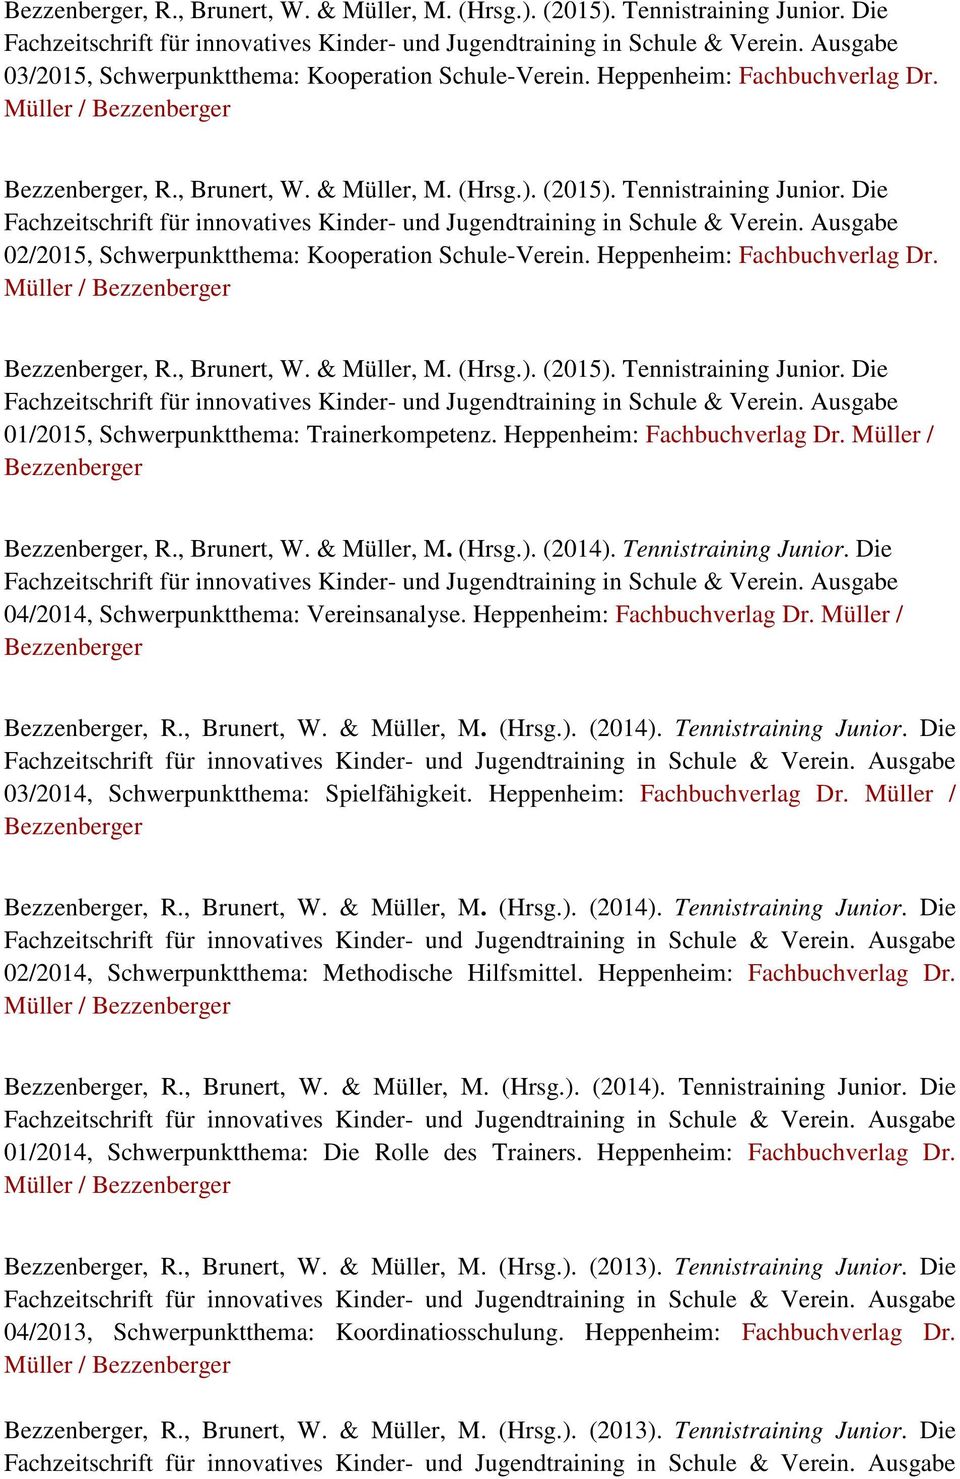 Heppenheim: Fachbuchverlag Dr. Müller / Bezzenberger Bezzenberger, R., Brunert, W. & Müller, M. (Hrsg.). (2014). Tennistraining Junior. Die 04/2014, Schwerpunktthema: Vereinsanalyse.